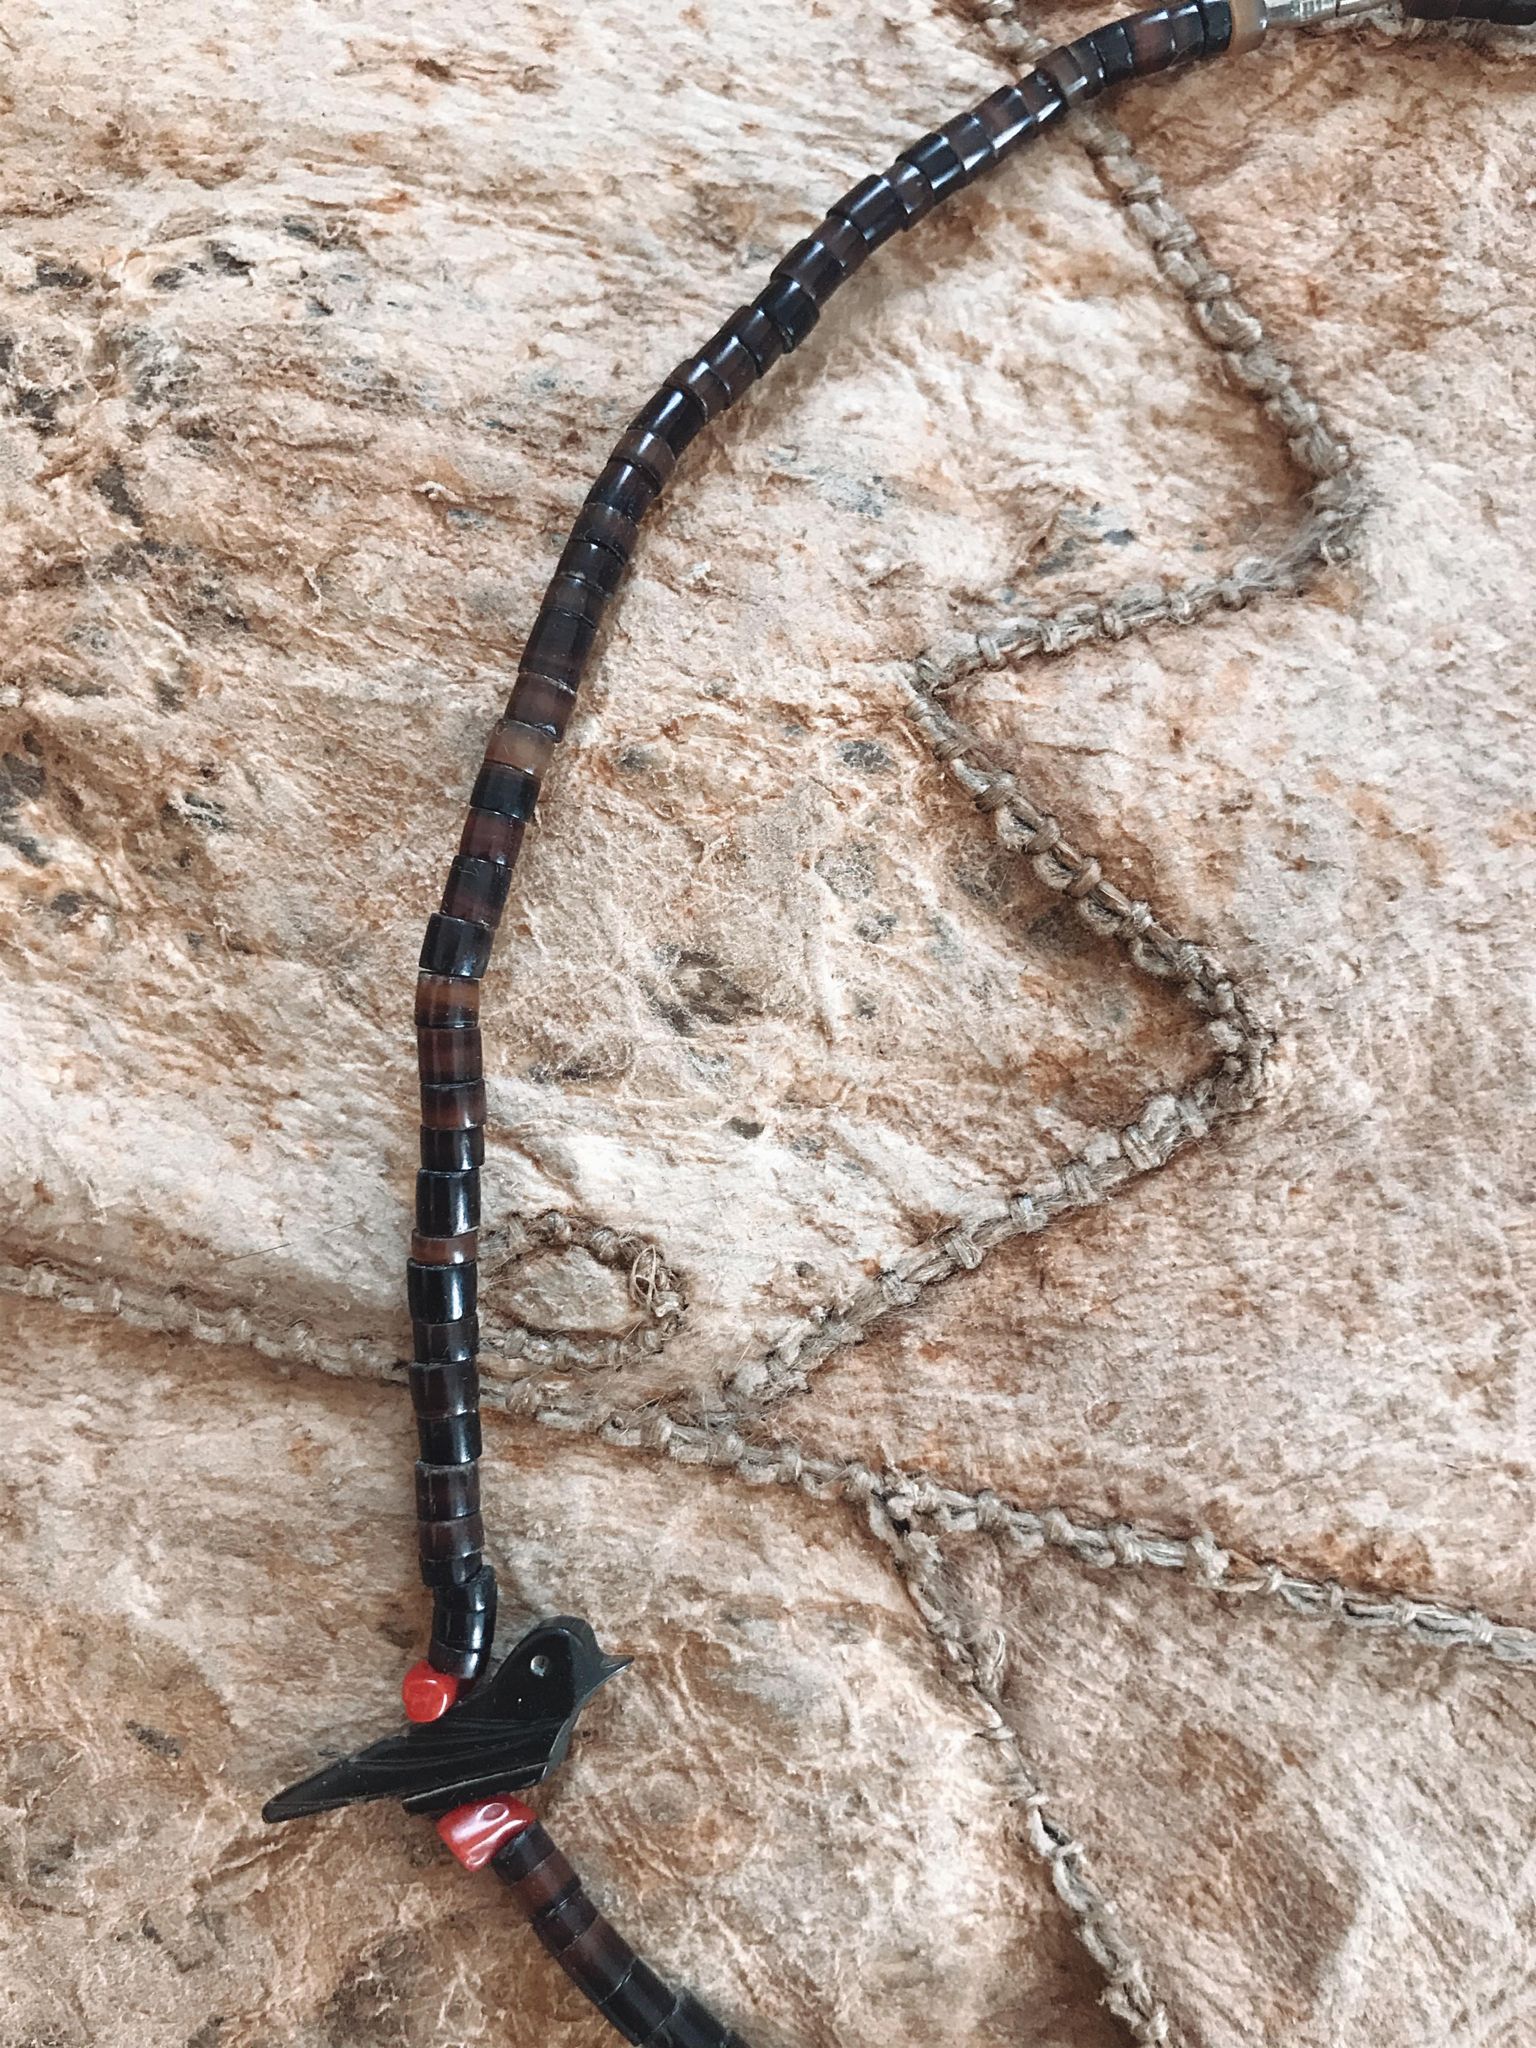 Vintage Zuni Fetish Necklace